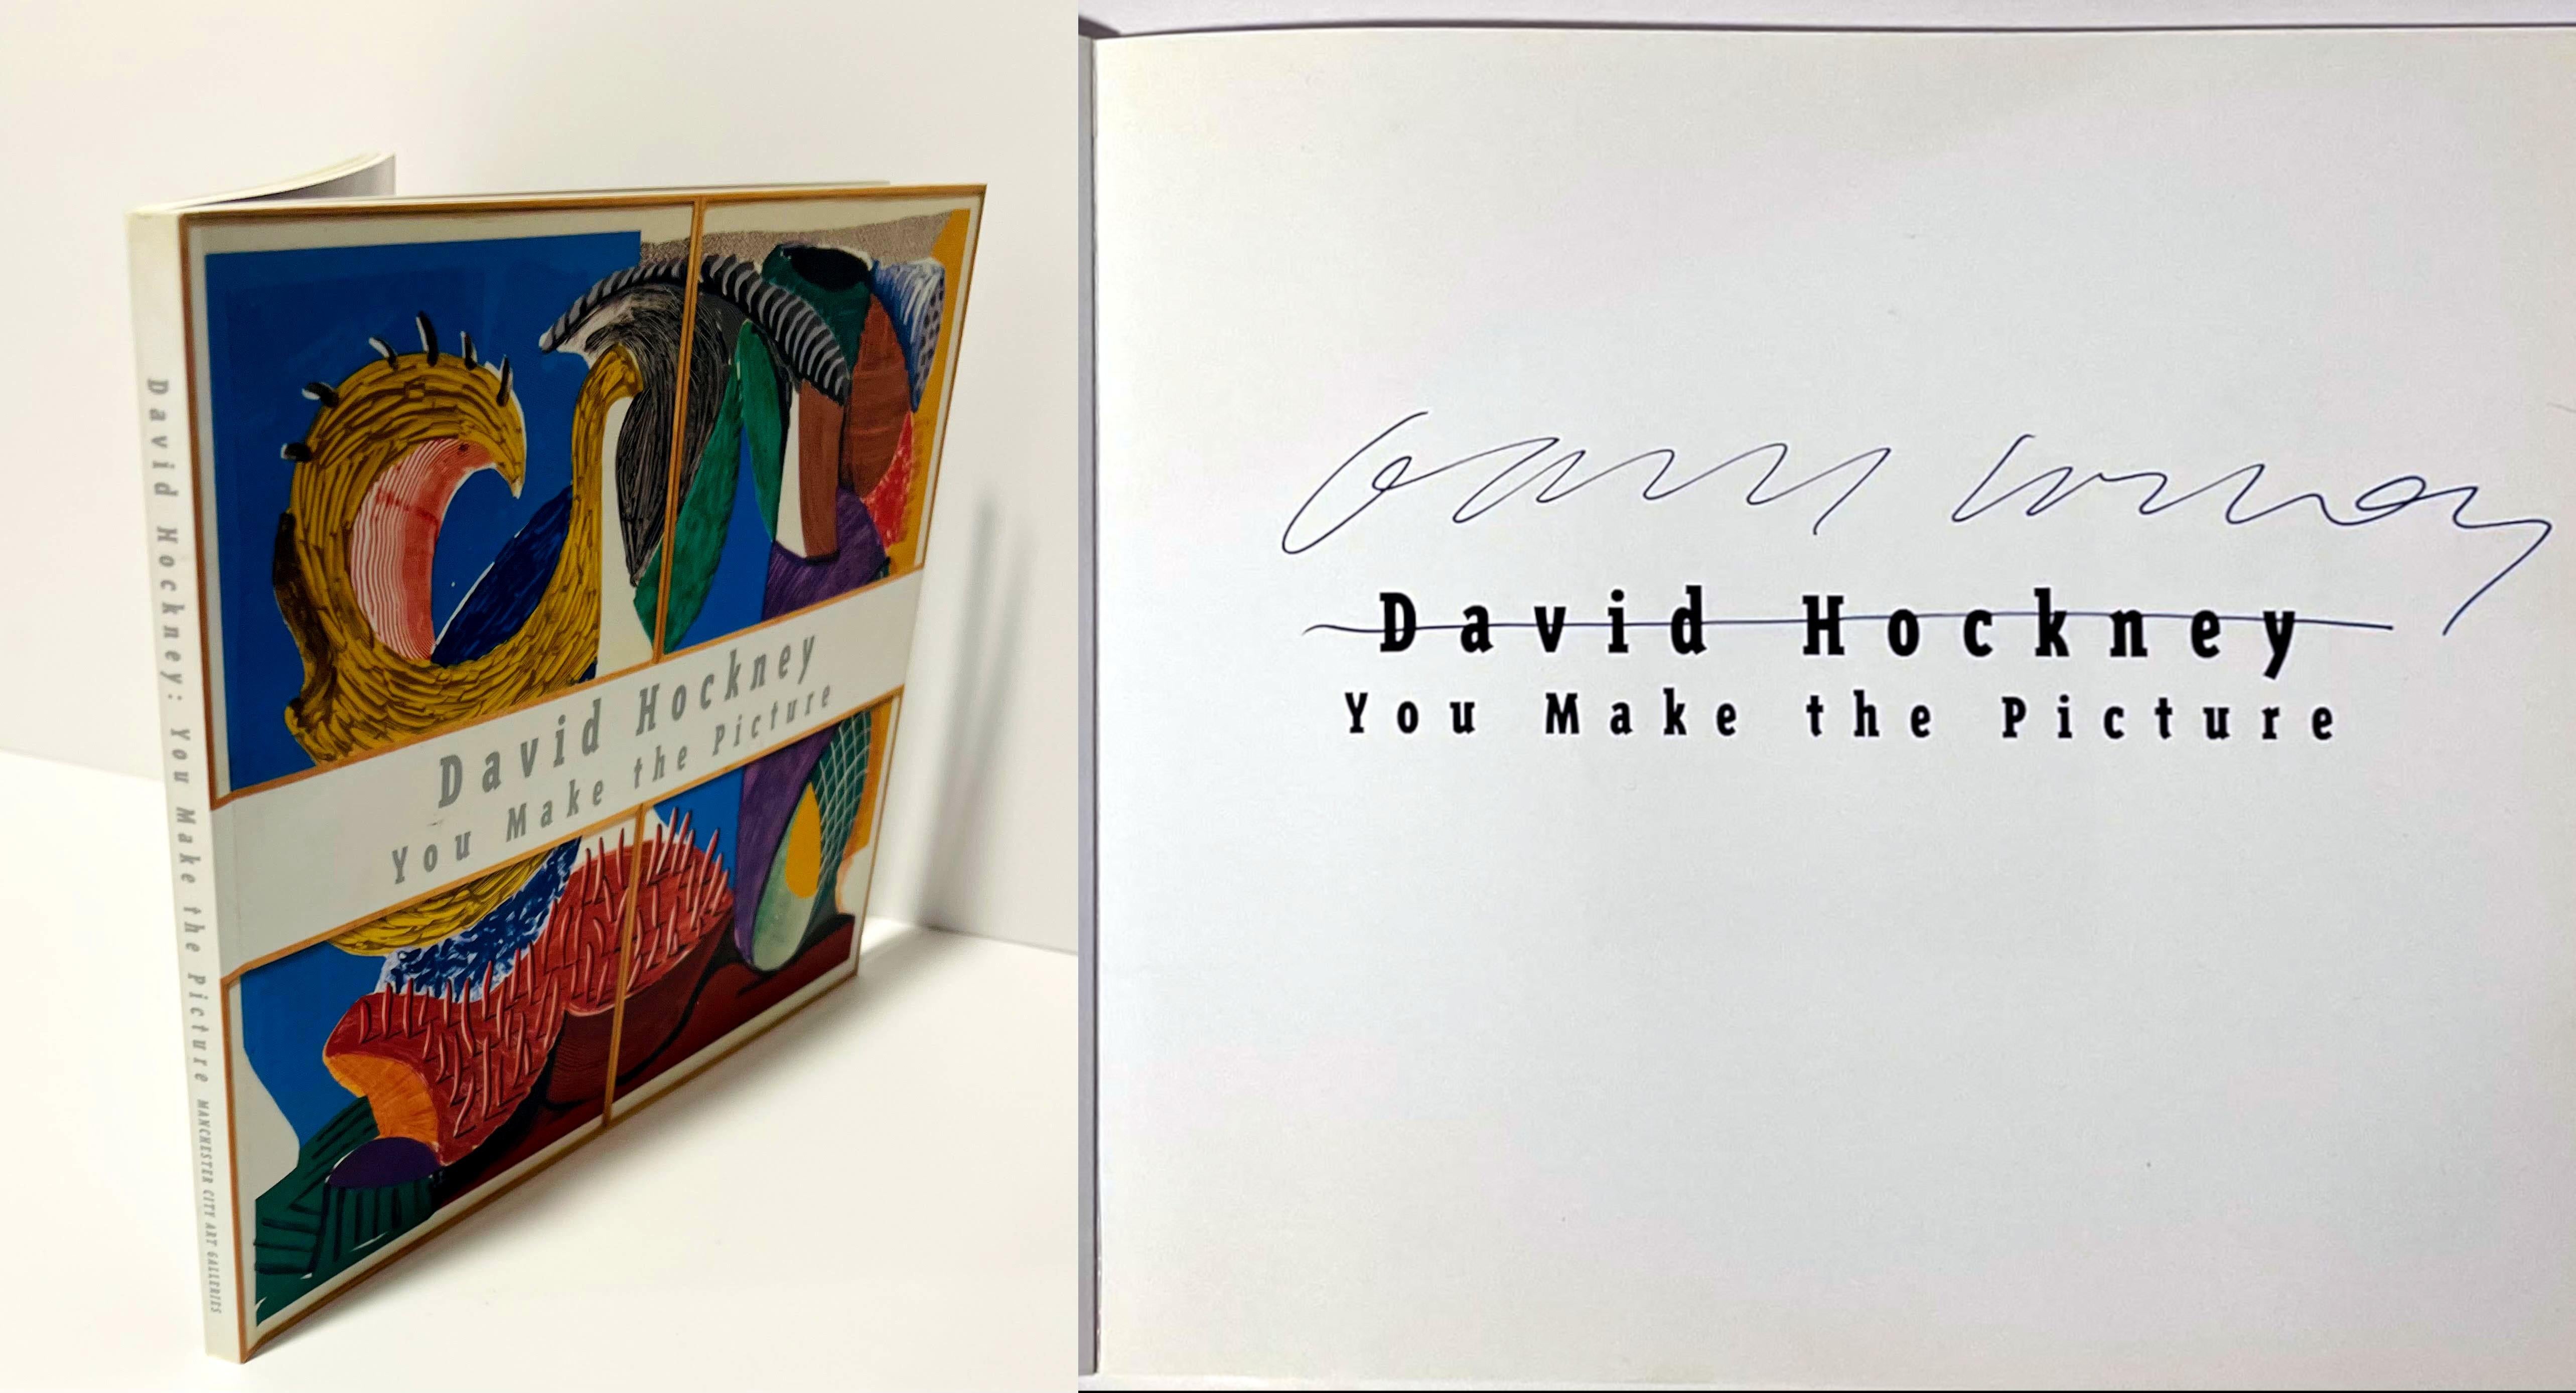 David Hockney
Du machst das Bild (handsigniert von David Hockney), 1996
Softback-Katalog mit steifem Umschlag und französisch gefalteten Klappen (handsigniert von David Hockney)
handsigniert von David Hockney auf der halben Titelseite
9 × 8 × 1/2